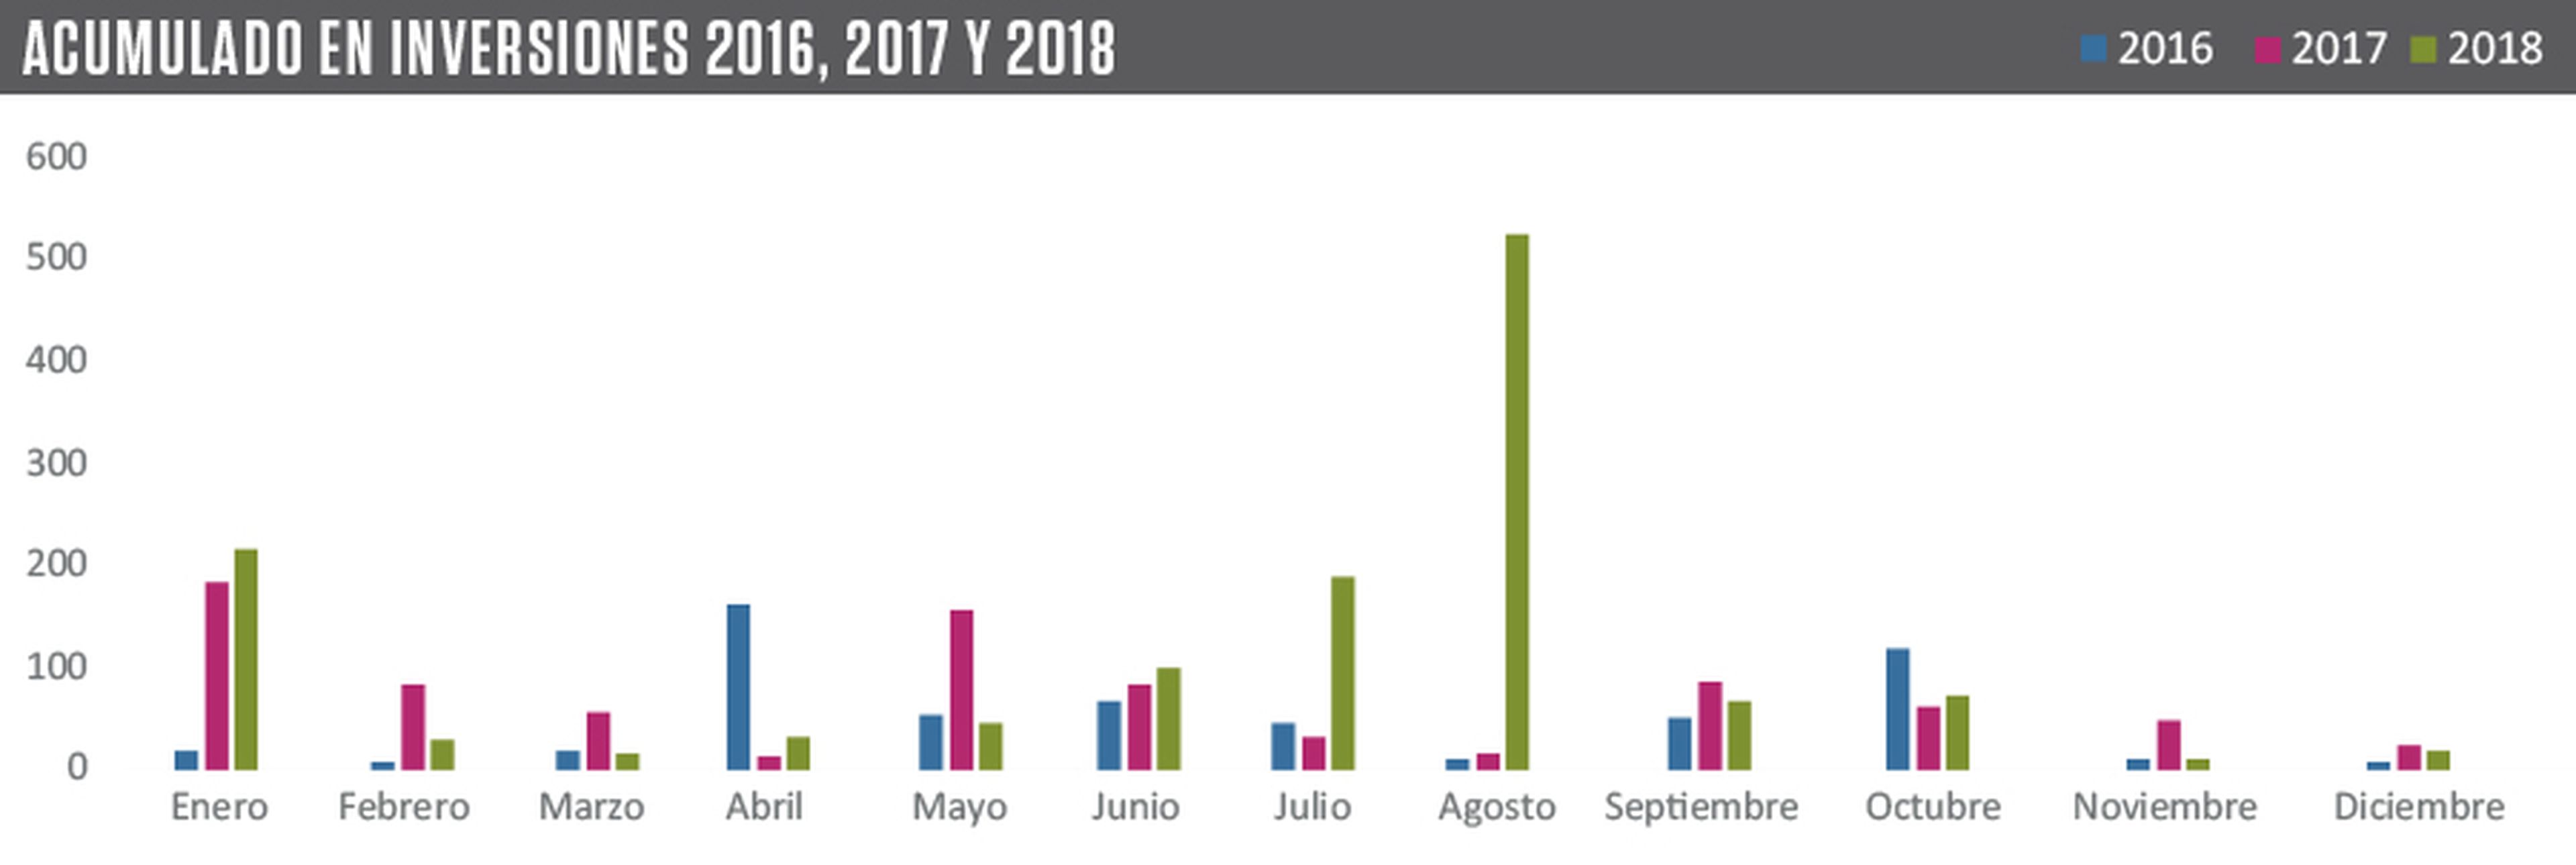 Inversiones en España 2016, 2017 y 2018.